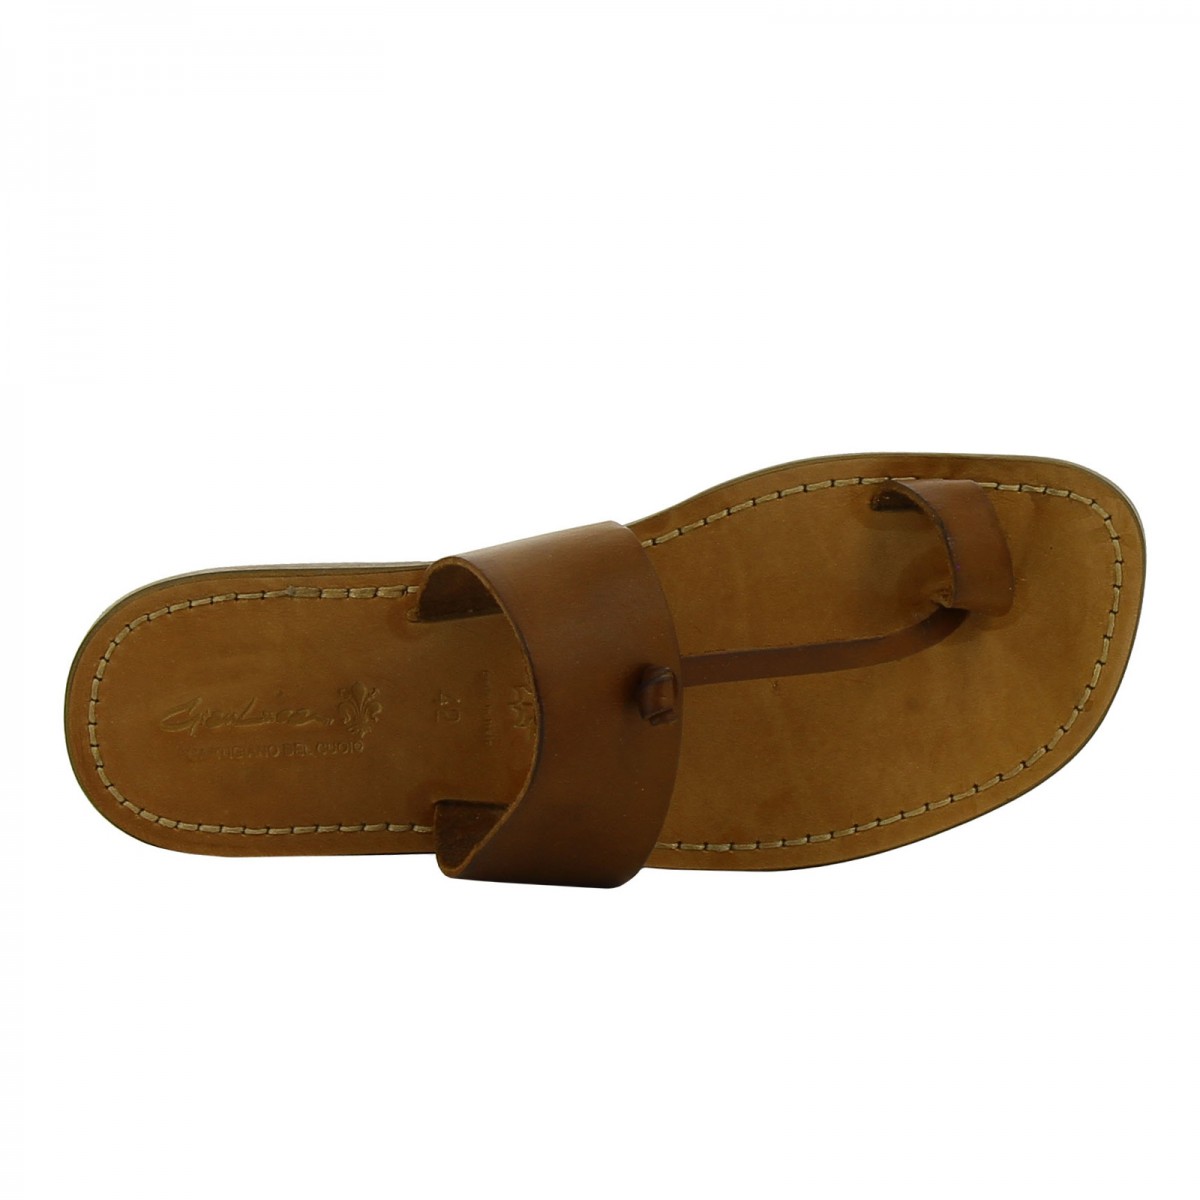 Walkaroo Go Men Toe Ring Slide Sandals - GG8217 Tan – Walkaroo Footwear